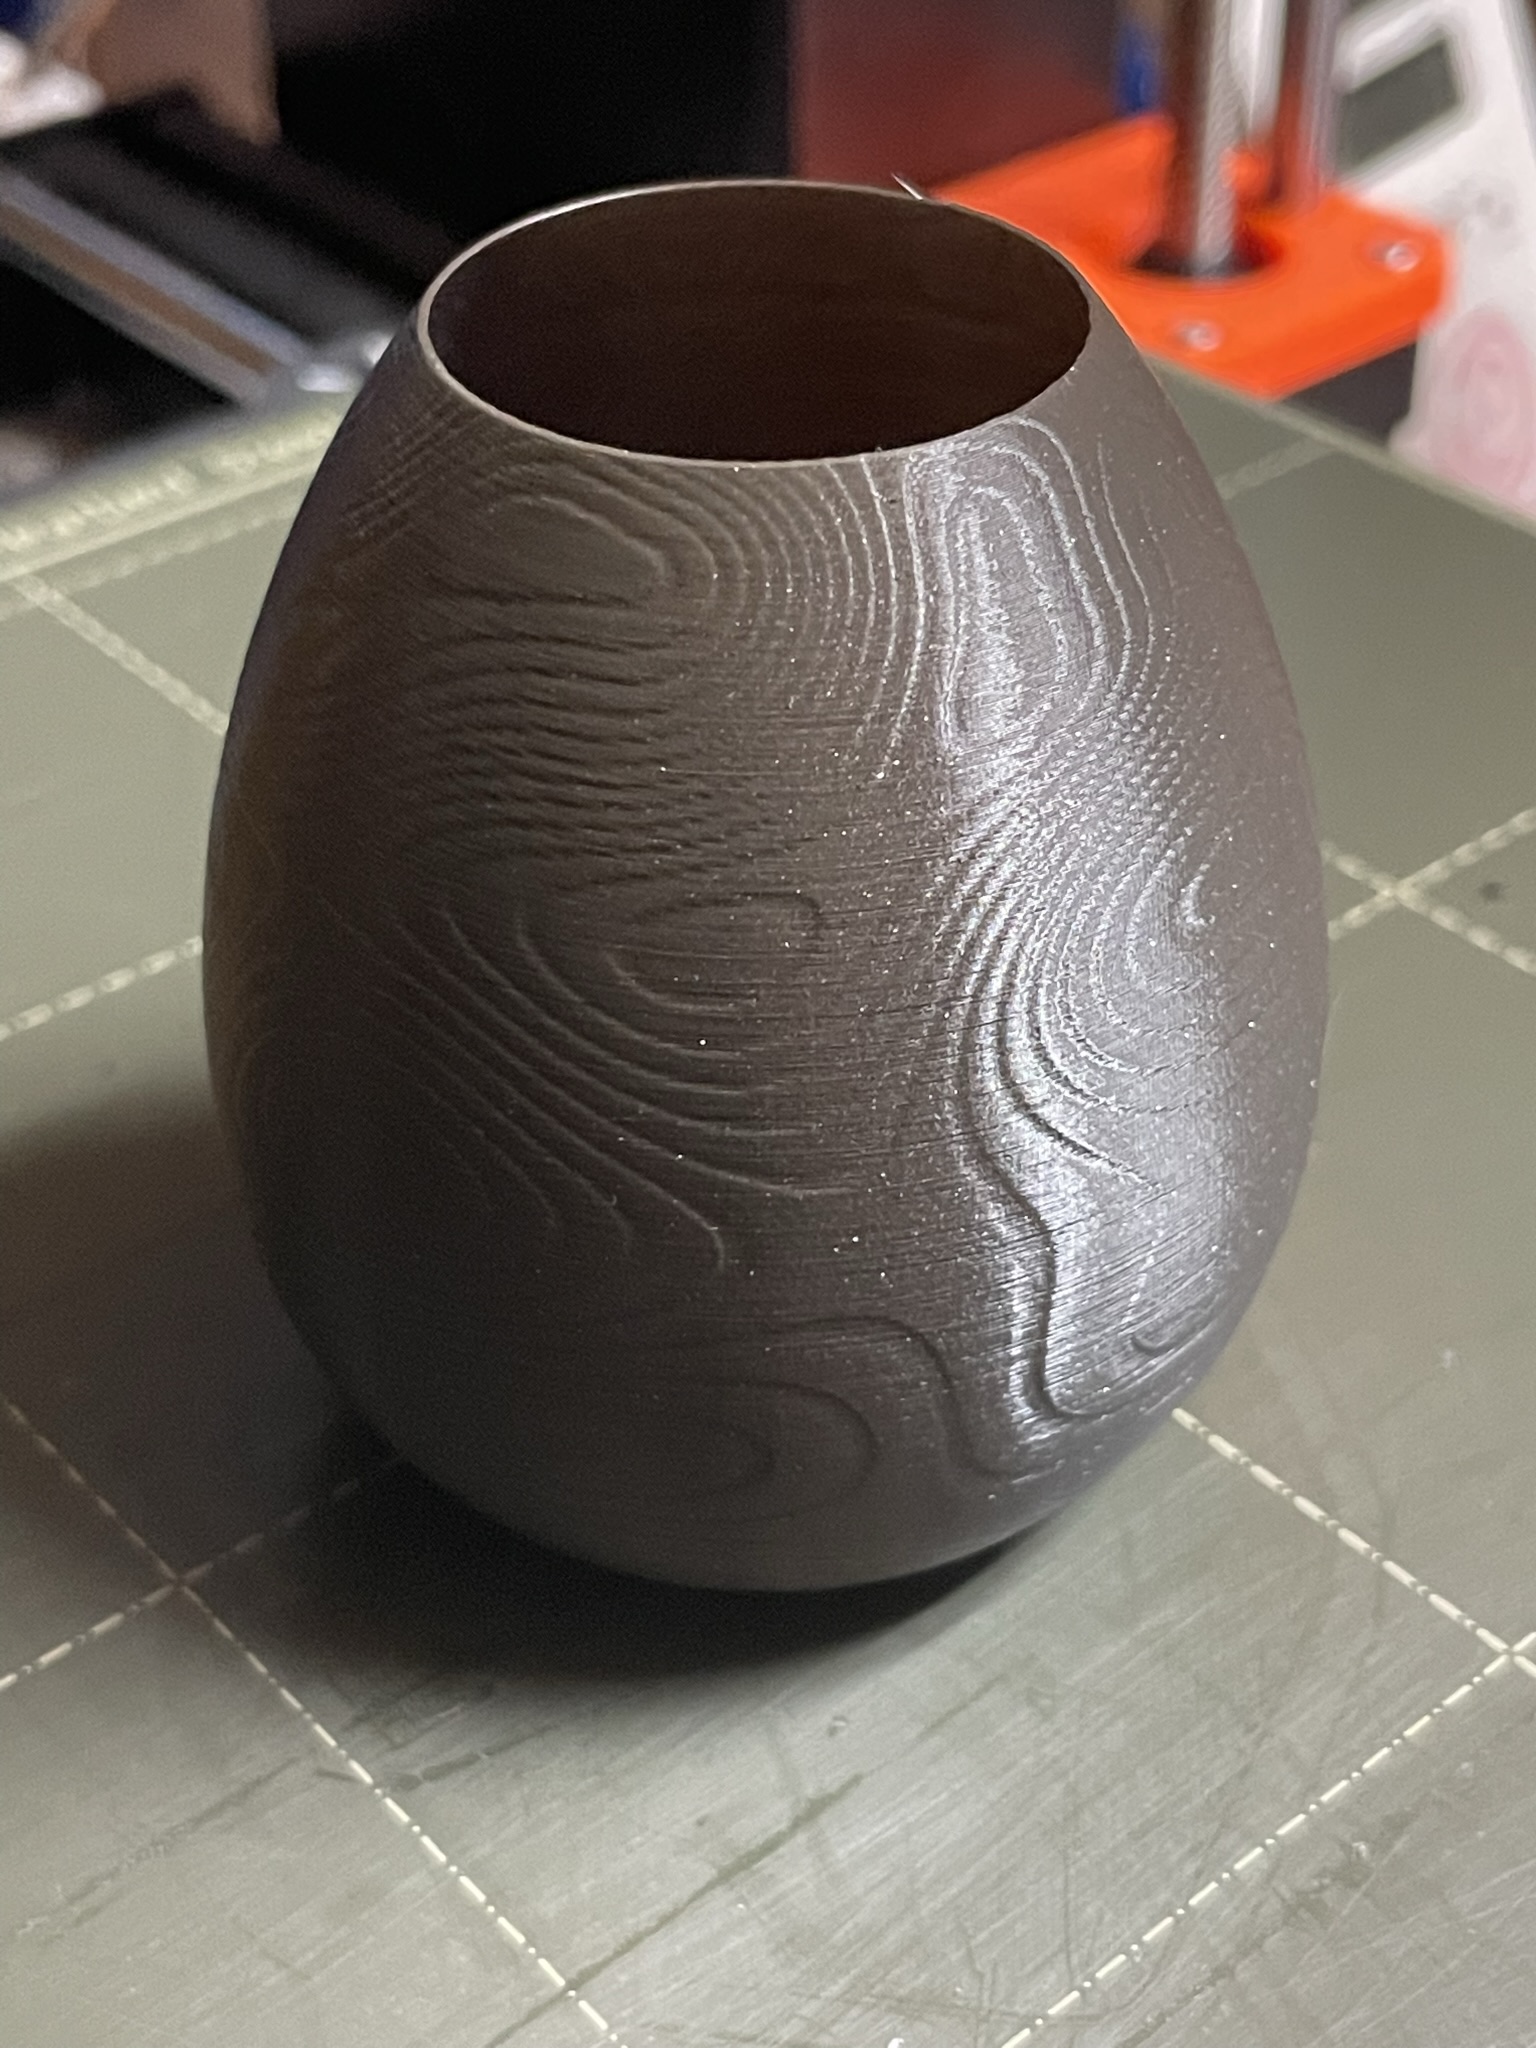 Beskar Easter Egg for Vase Mode